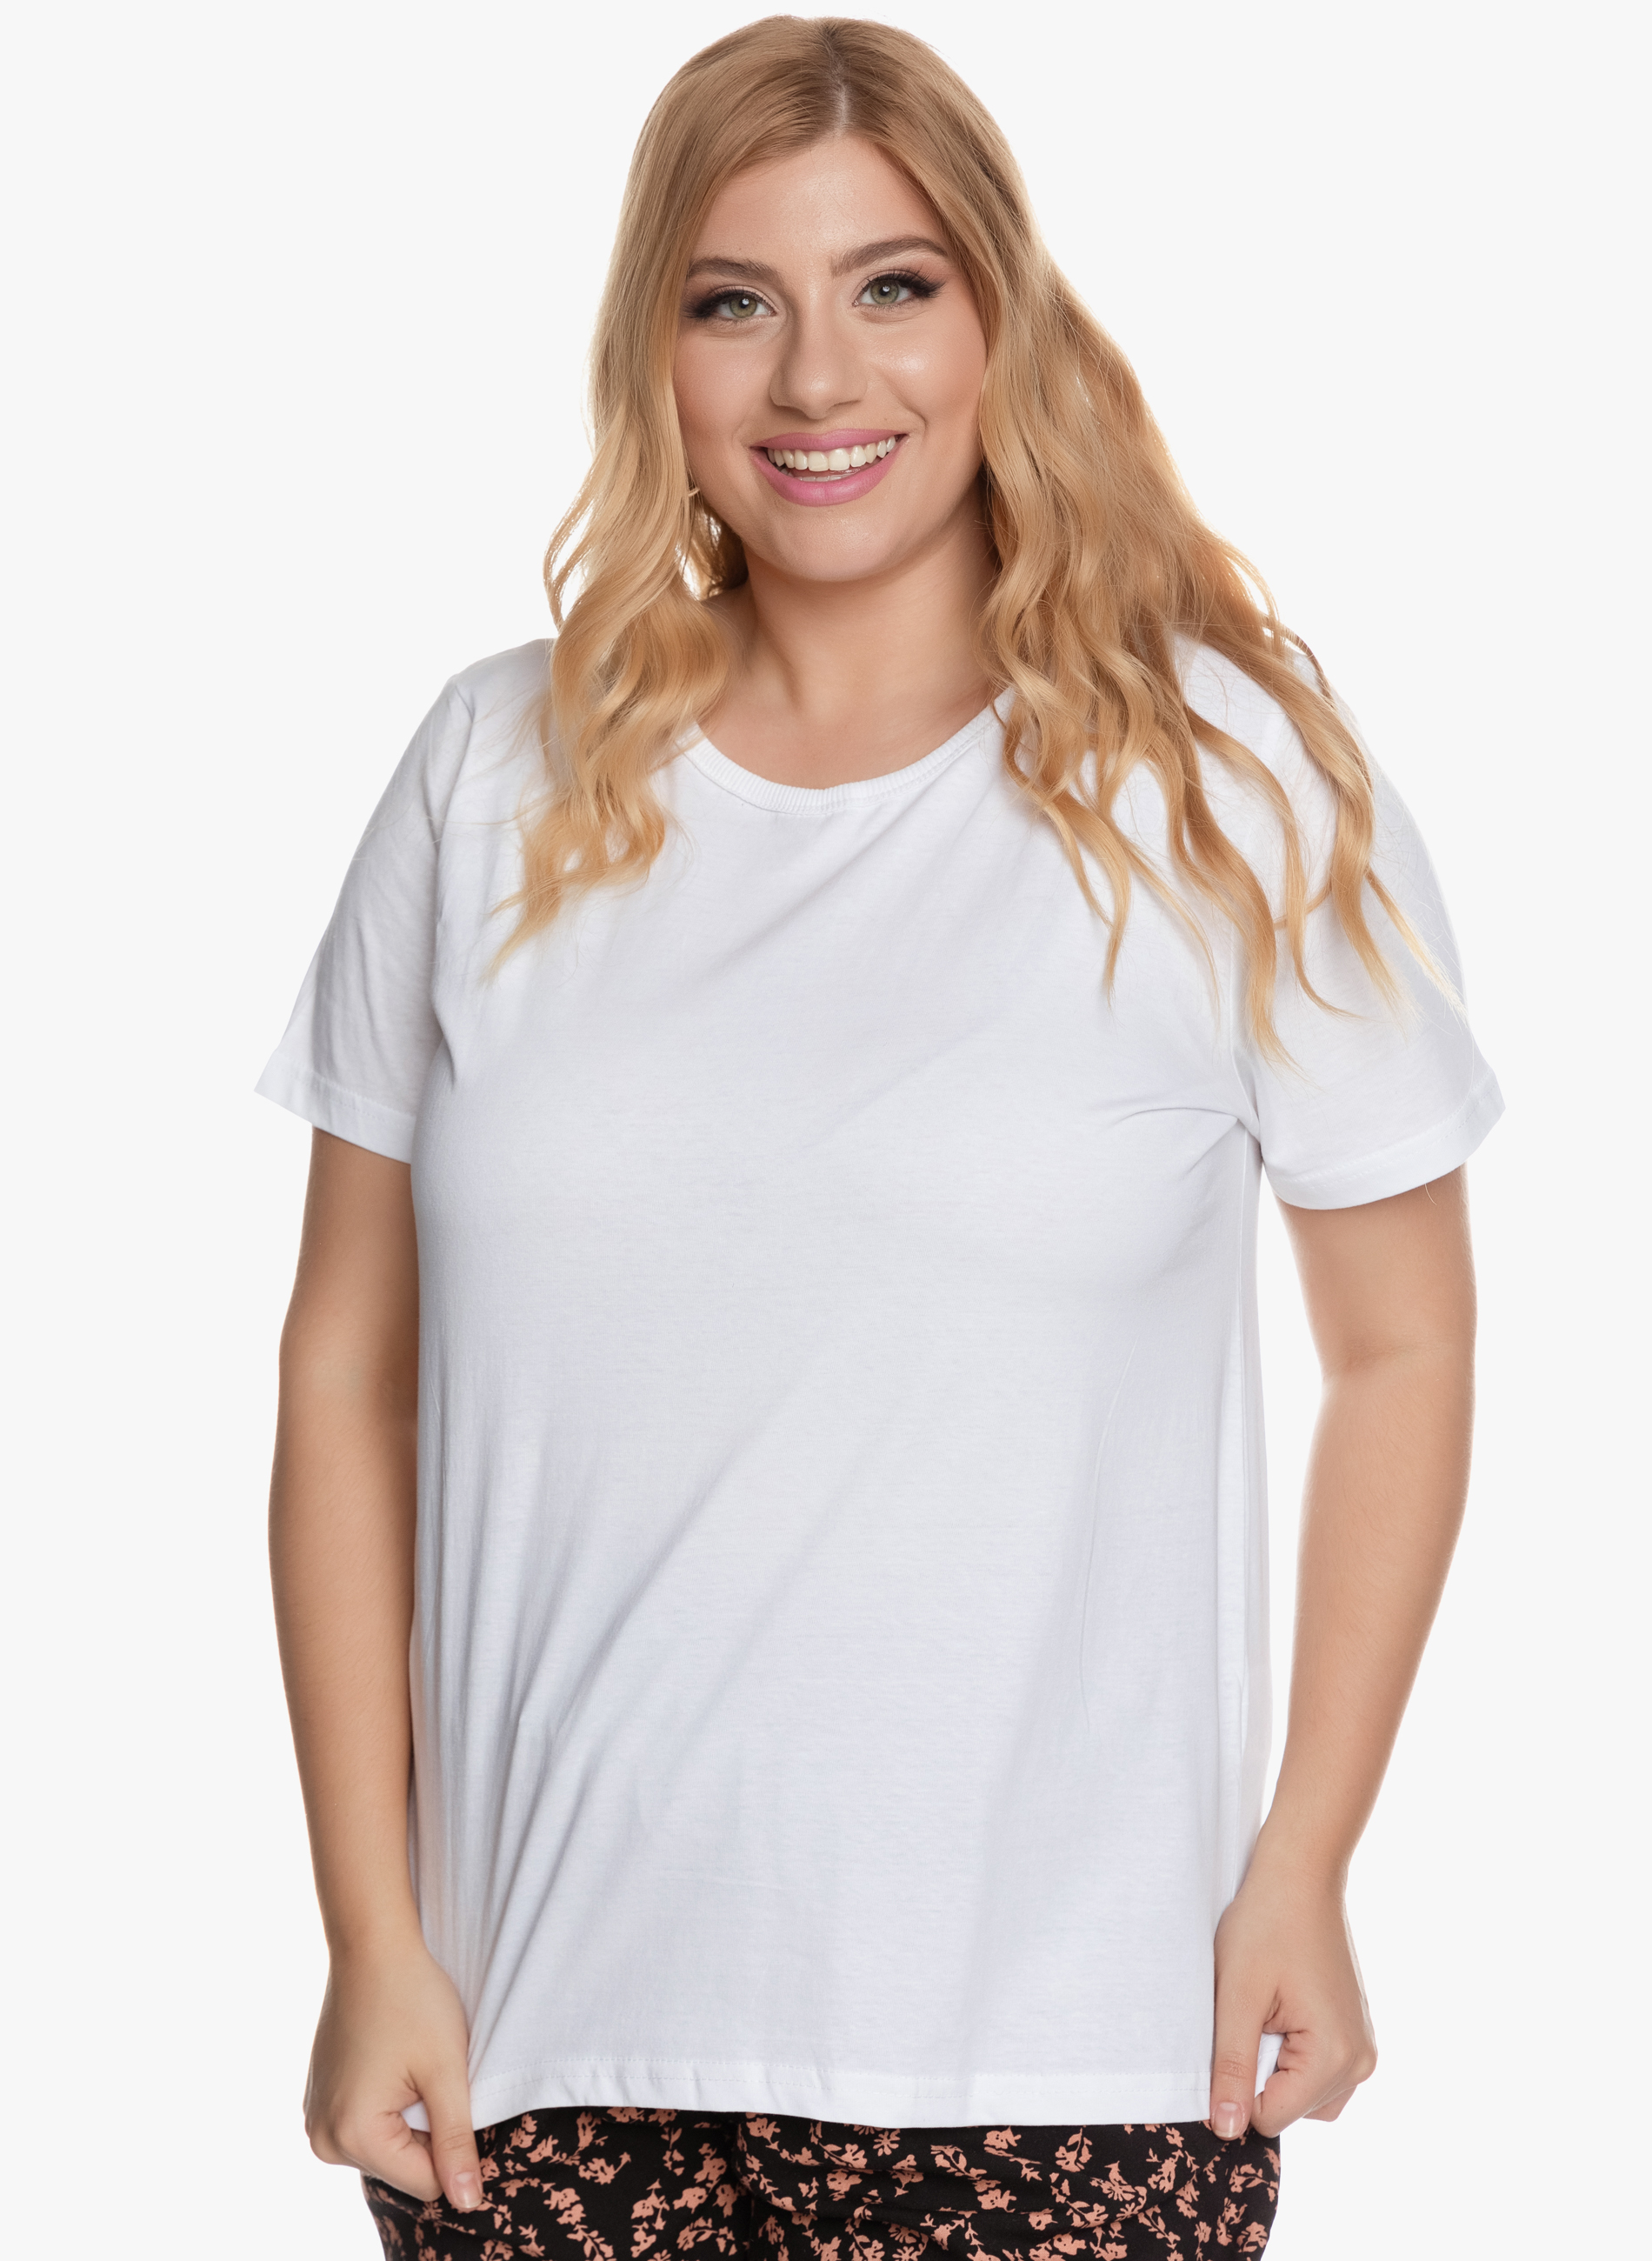 Βαμβακερό T-shirt Λευκό ΠΡΟΣΦΟΡΕΣ > ΜΠΛΟΥΖΕΣ